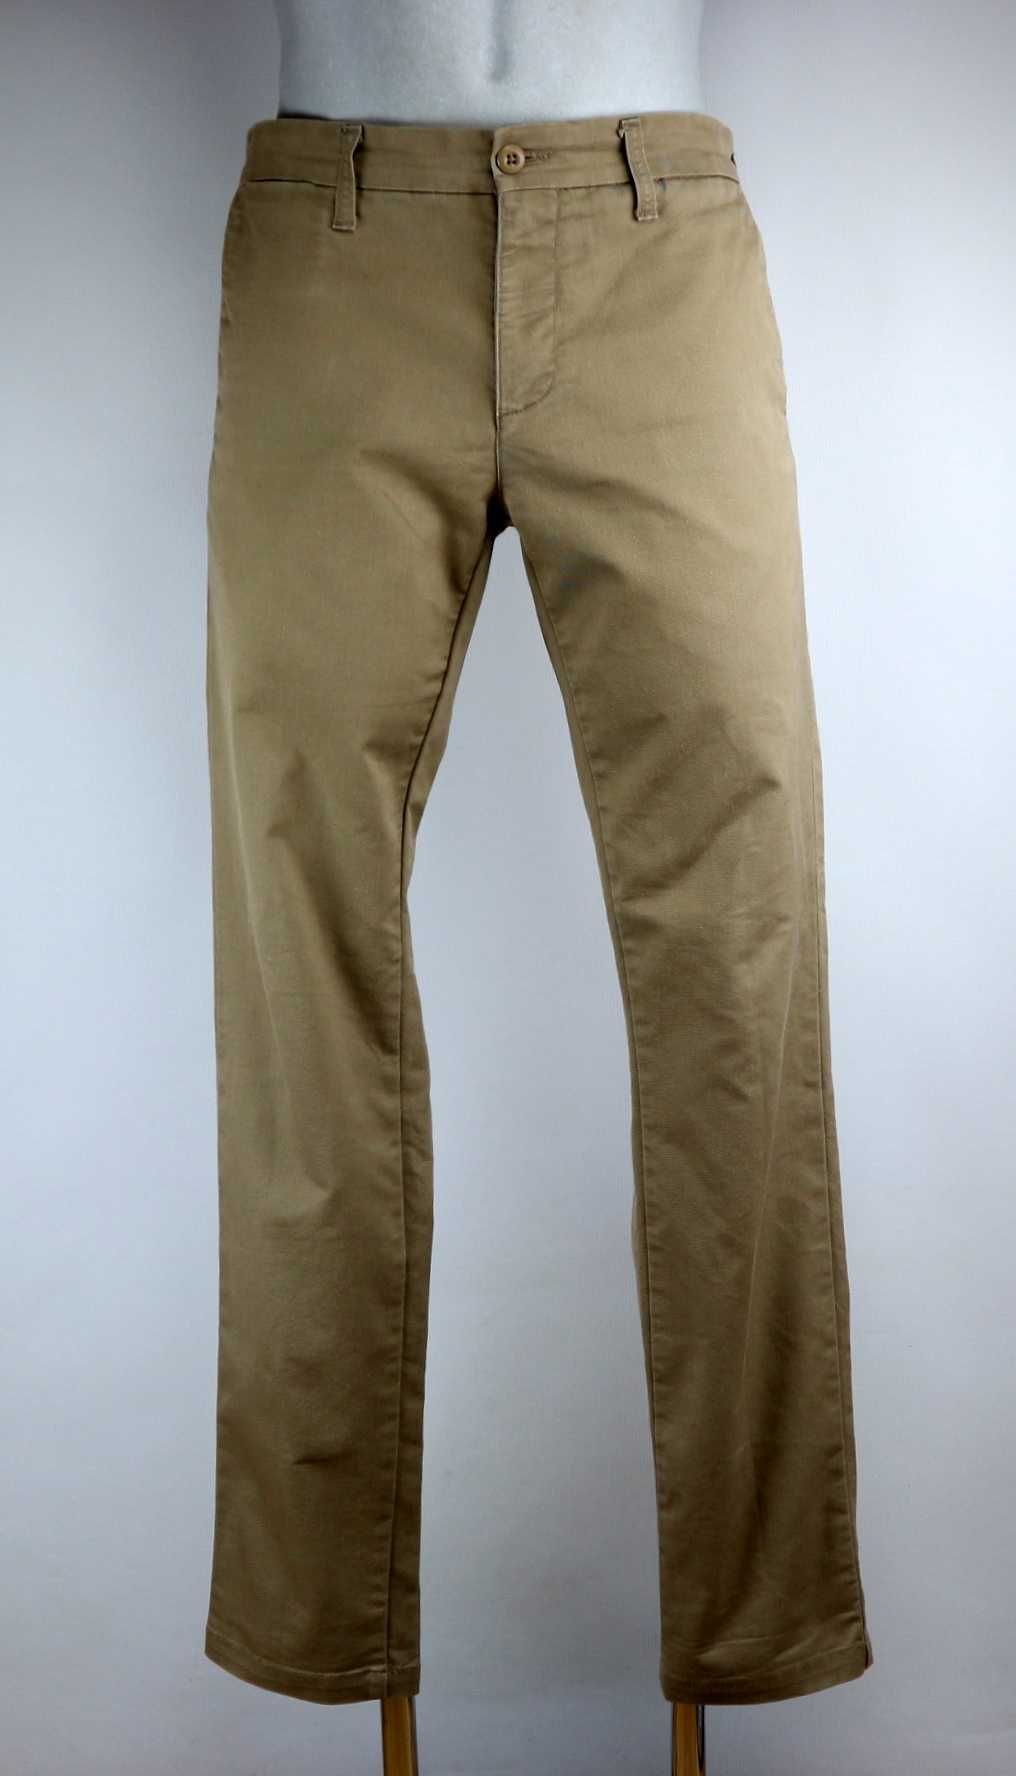 Carhartt Sid Pant spodnie materiałowe chino W33 L34 pas 2 x 44 cm